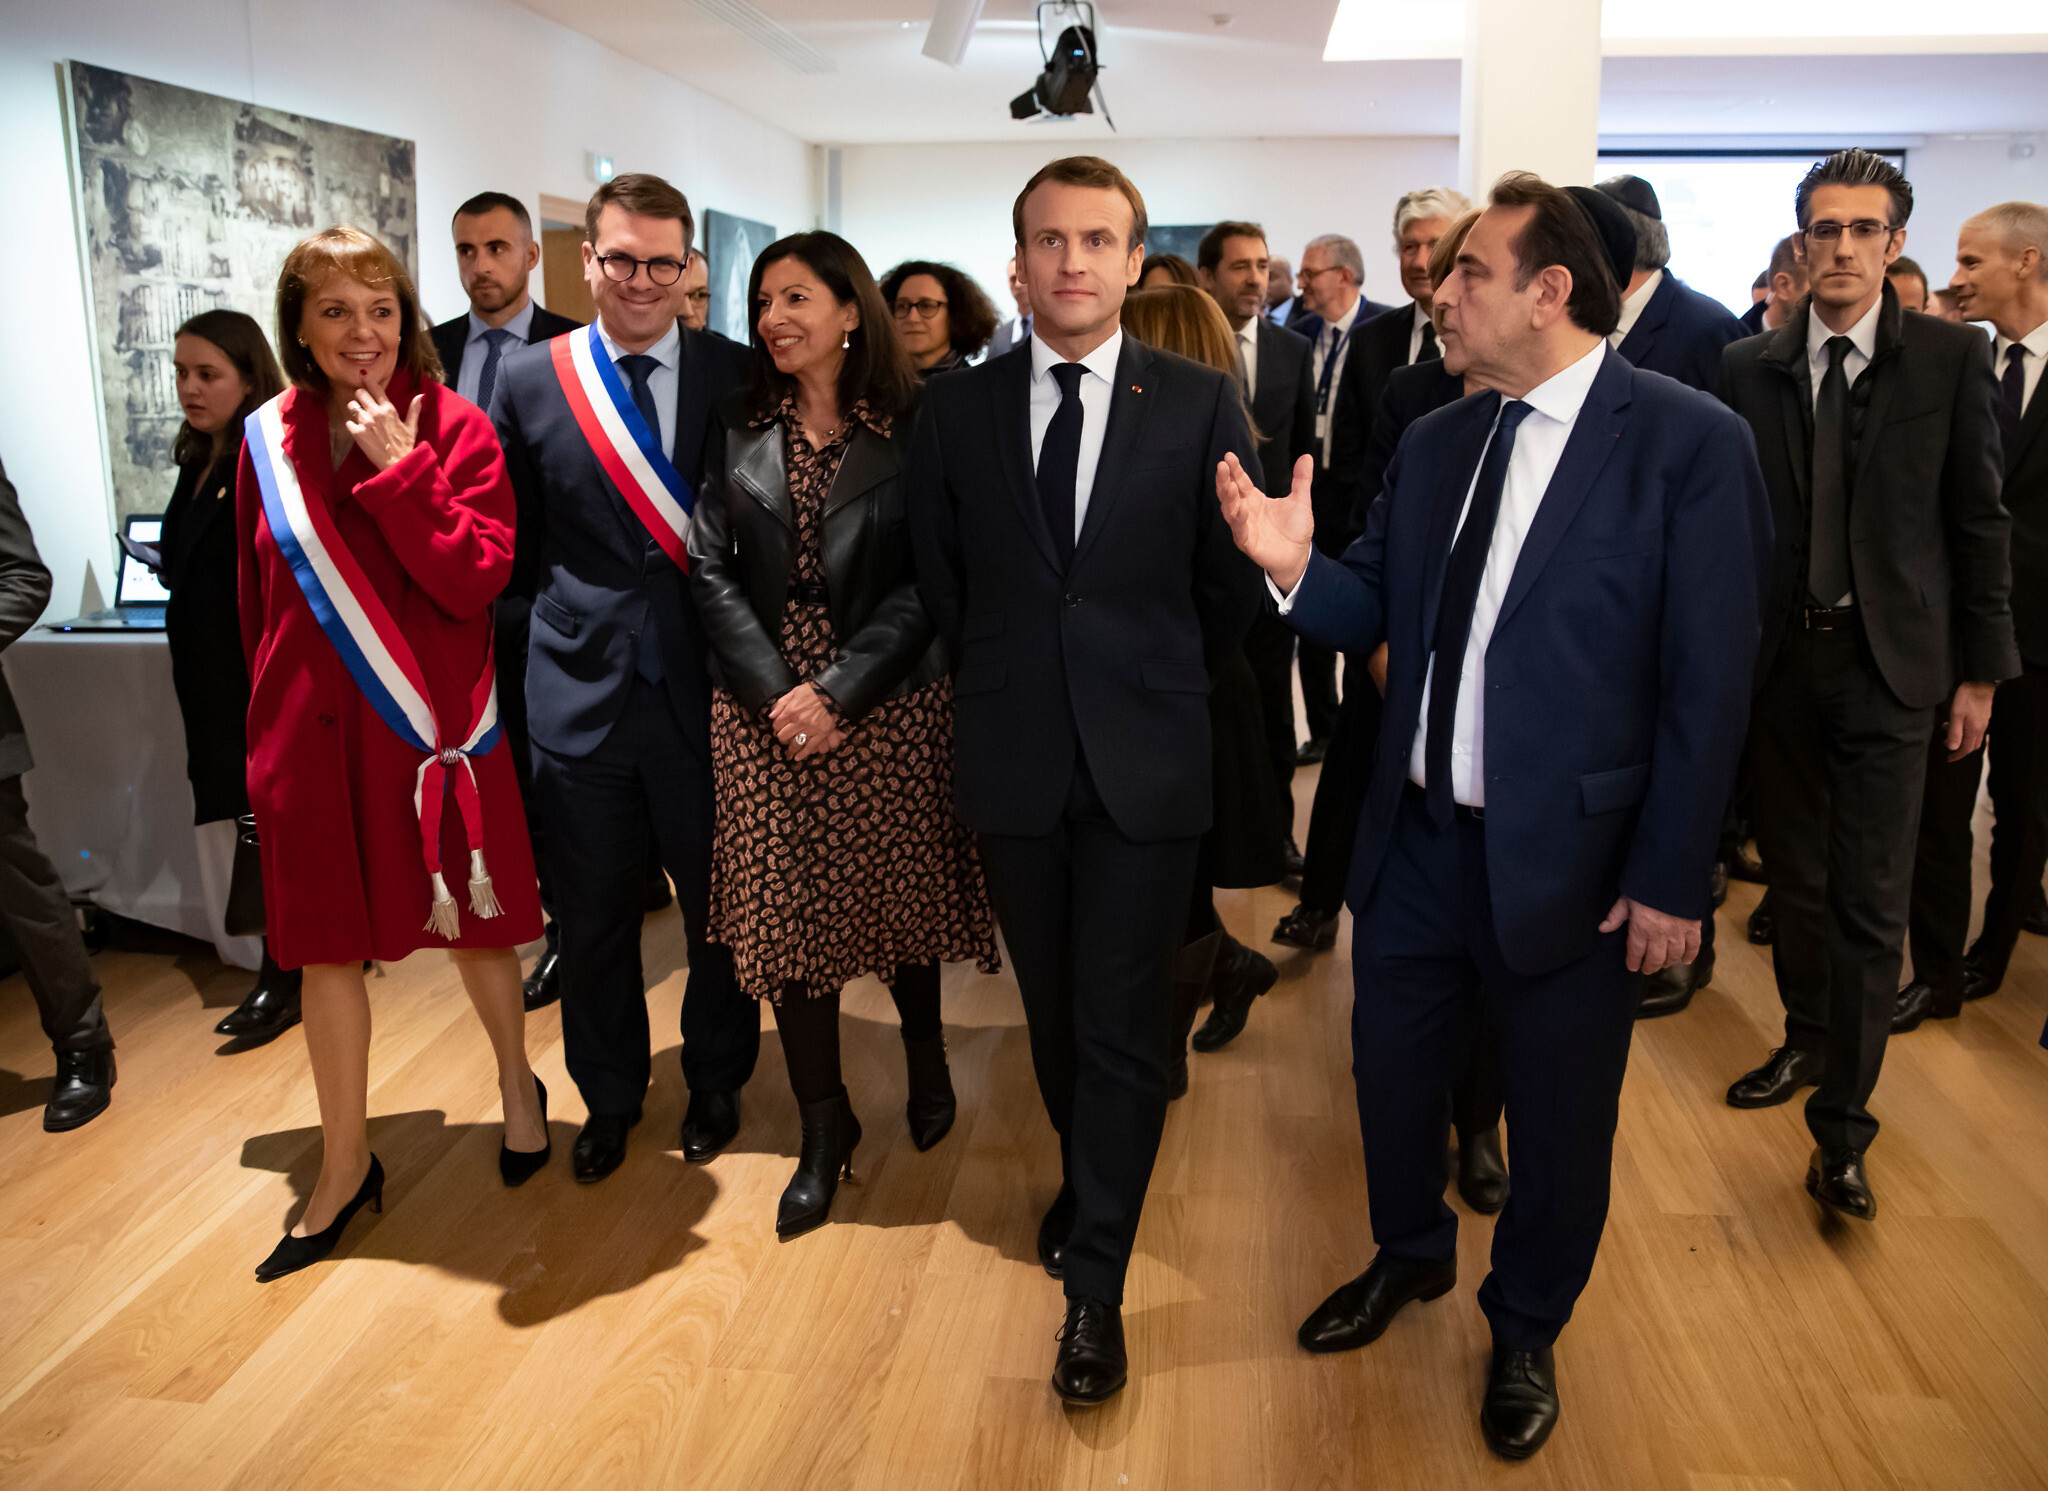 Le président français Emmanuel Macron, au centre, et Joël Mergui, à droite, le président du Consistoire, visitent le Centre juif européen lors de son inauguration officielle à Paris, le 29 octobre 2019. (Crédit : Ian Langsdon/ Pool/ AFP via Getty Images/ via JTA)